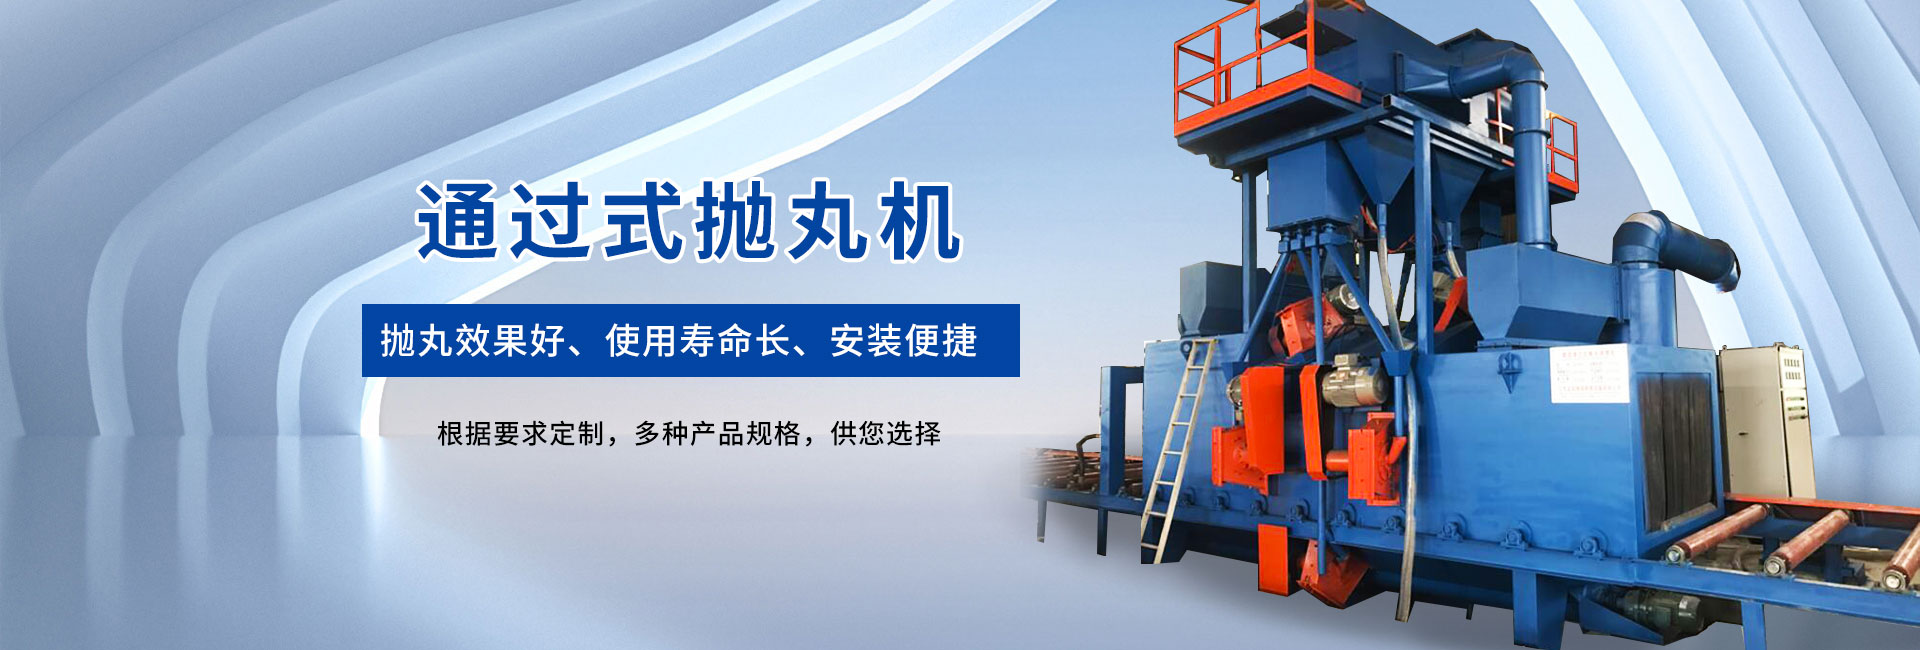 江苏海越铸造机械科技有限公司